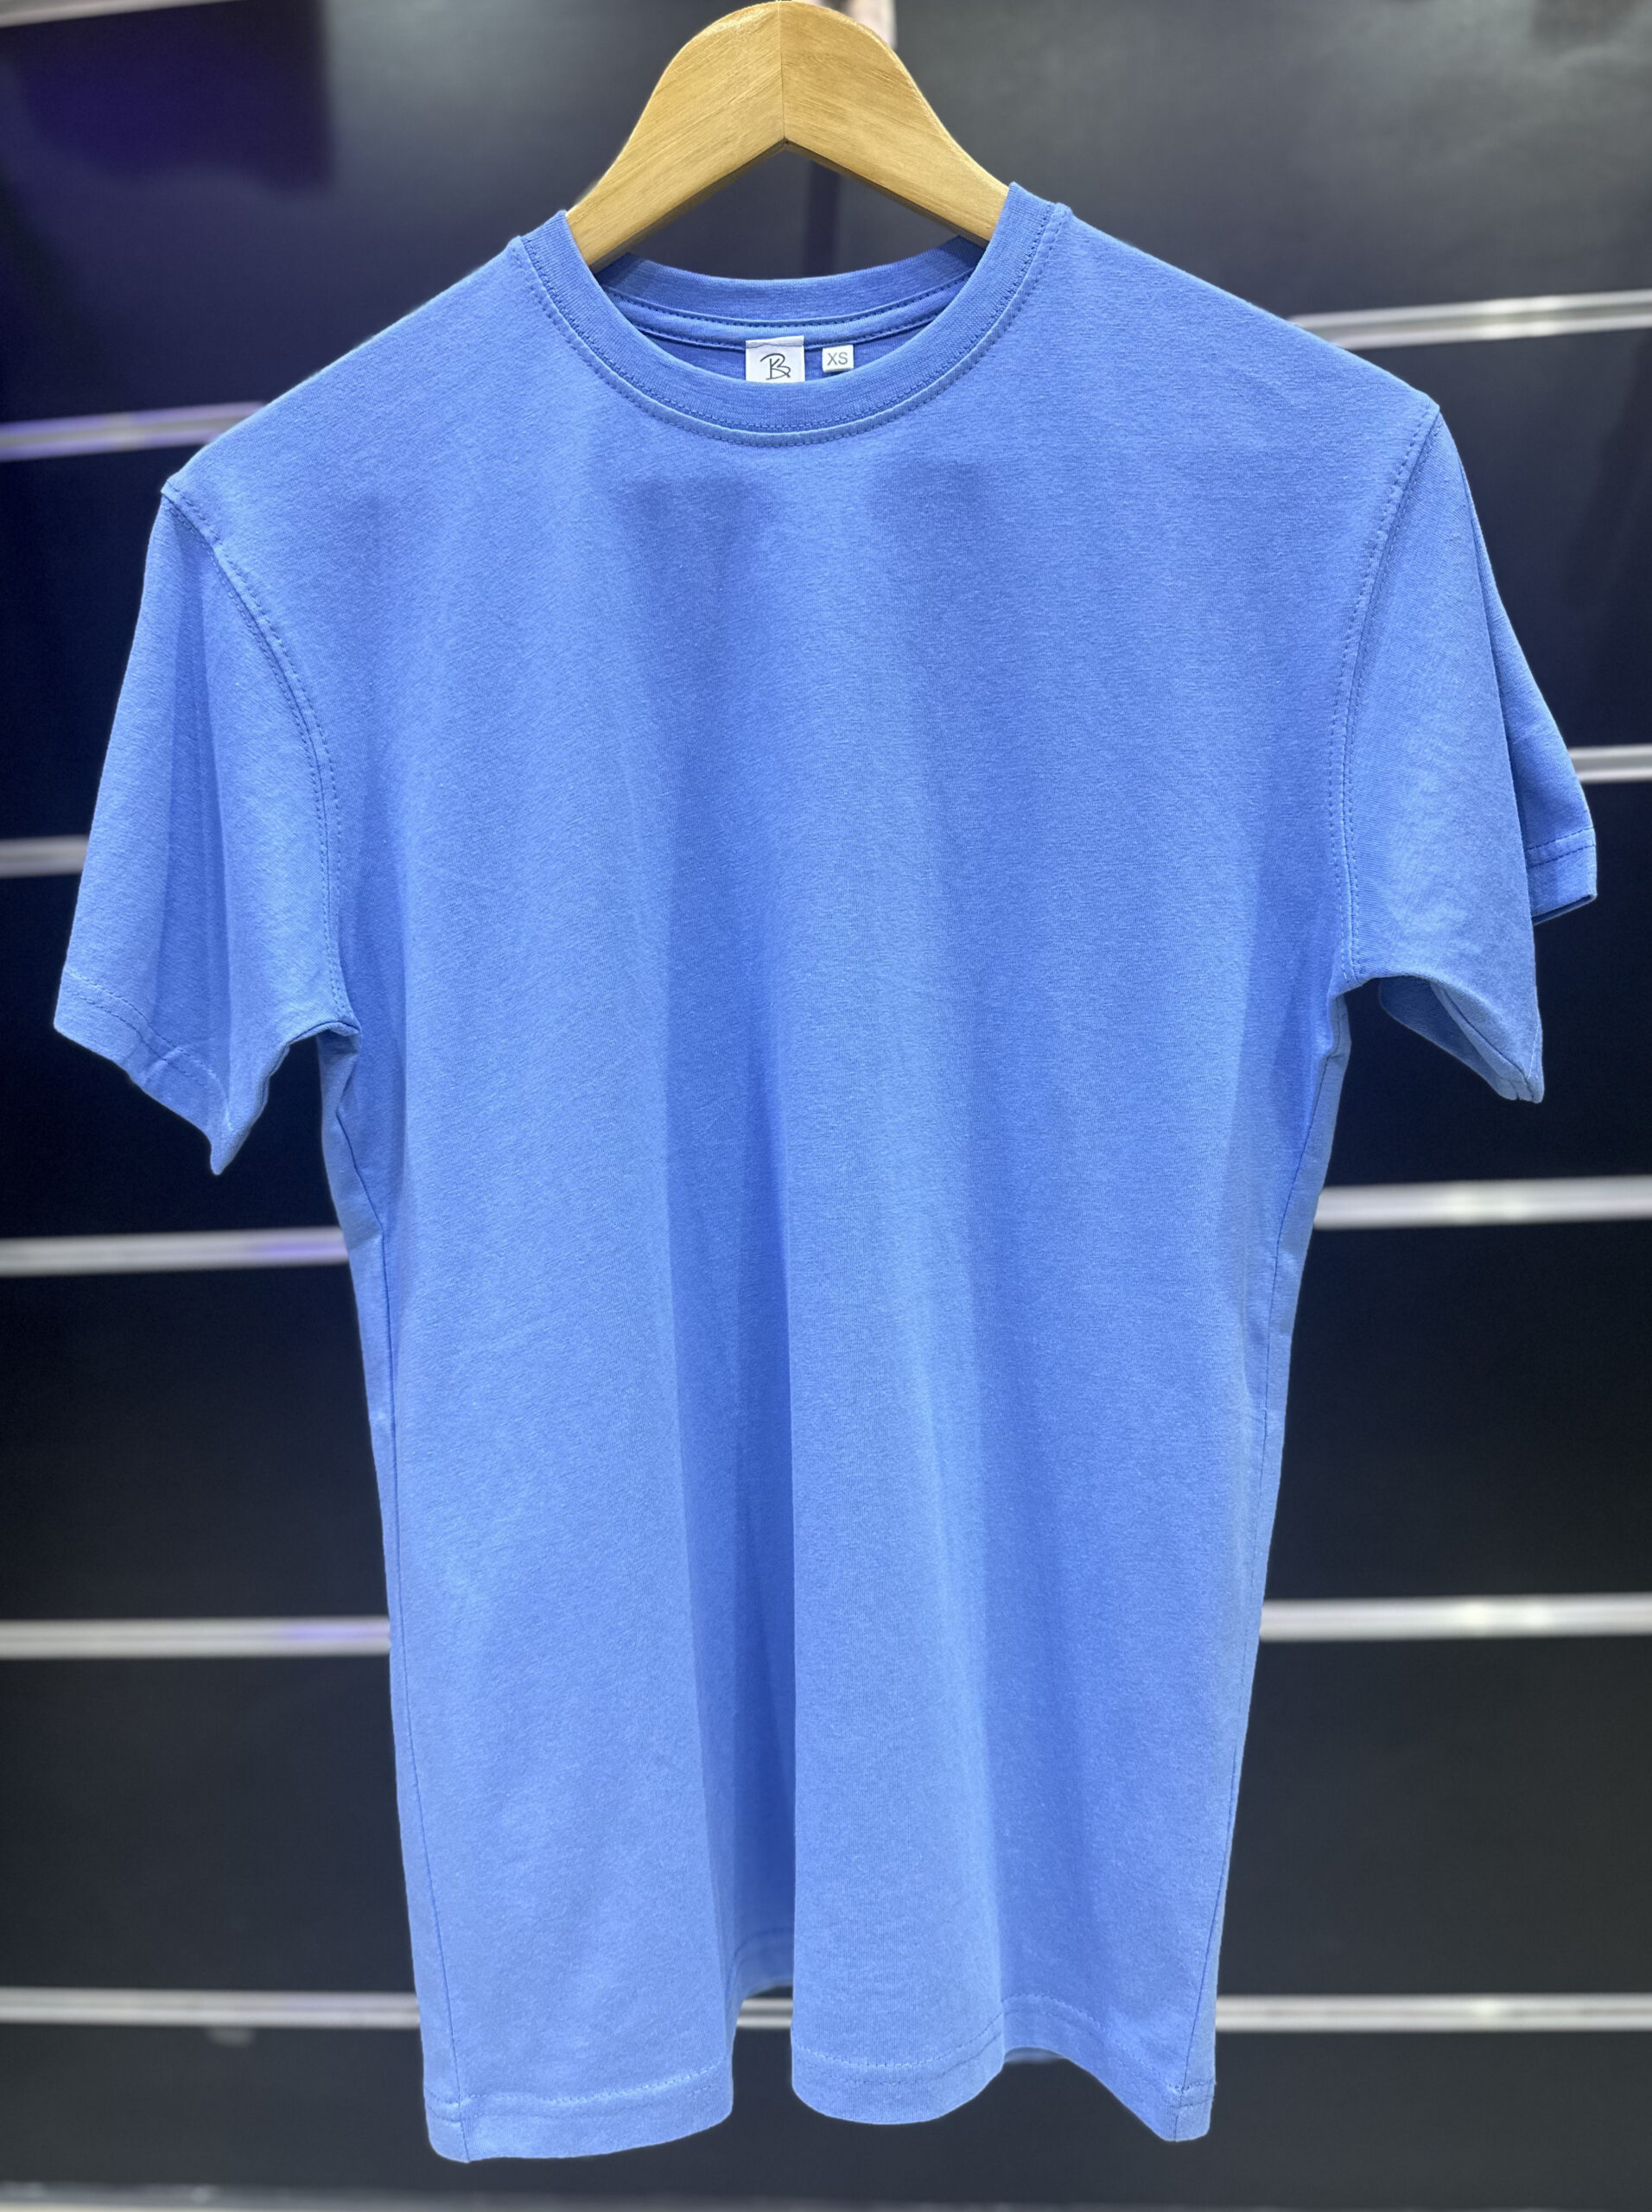 Cotton Sky Blue T Shirt - mens cotton t shirts